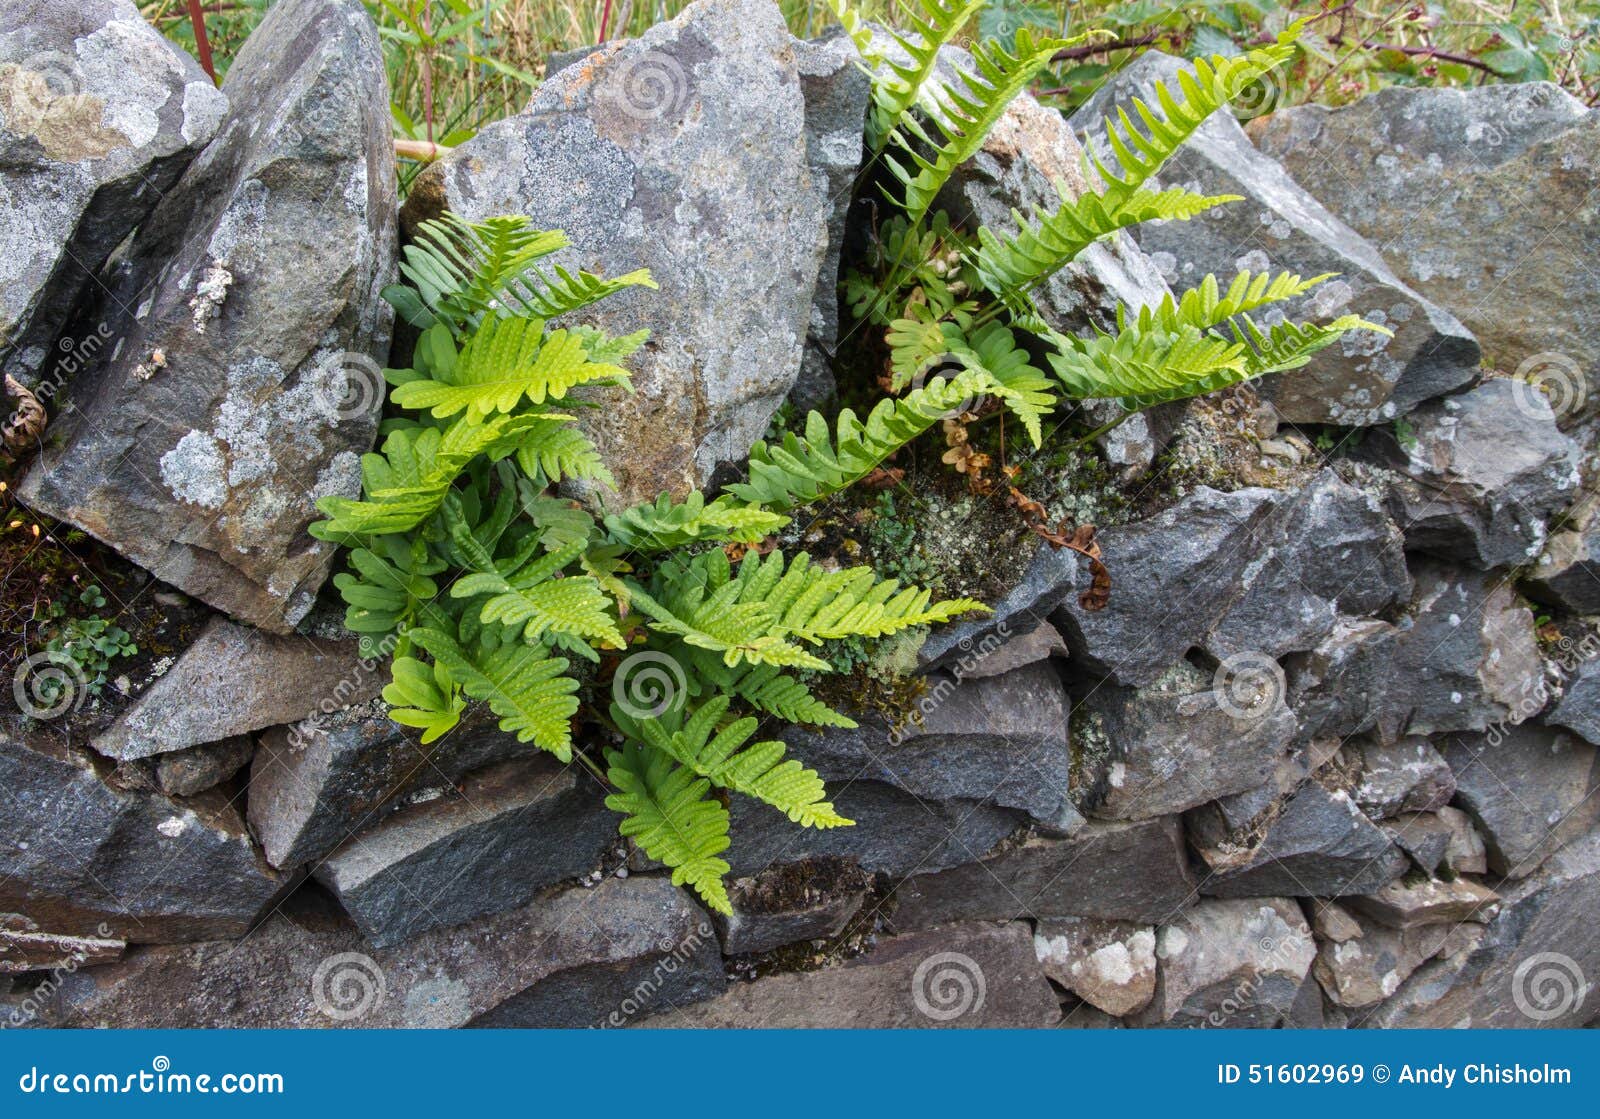 green deer fern, blechnum spicant growing out of wall.